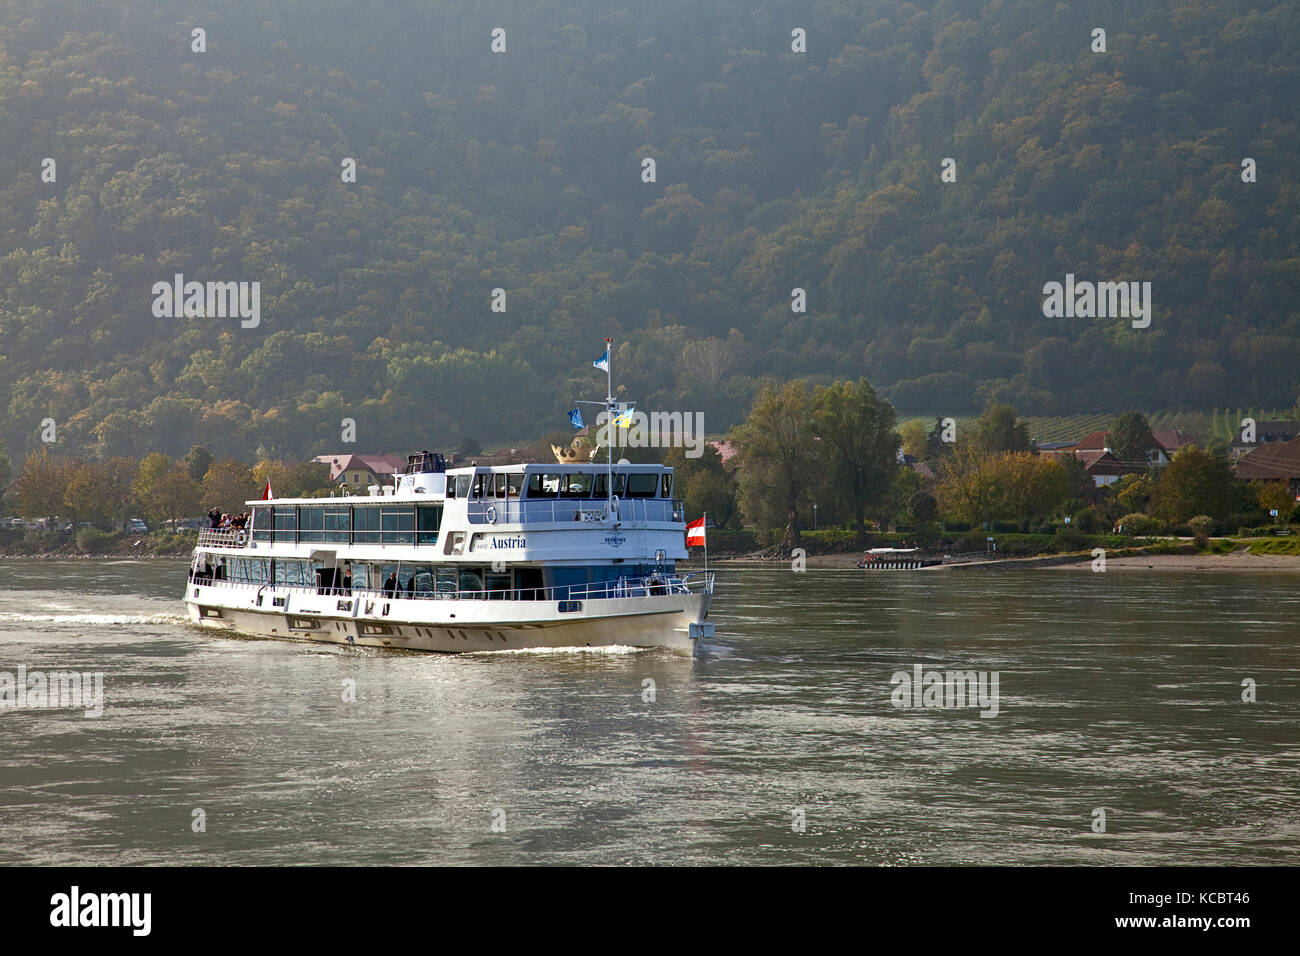 La valle di Wachau, Austria: MV Austria è uno dei numerosi traghetti che esercitano la maggior parte scenica del Danubio, il tratto fra Melk e Durnstein. Foto Stock